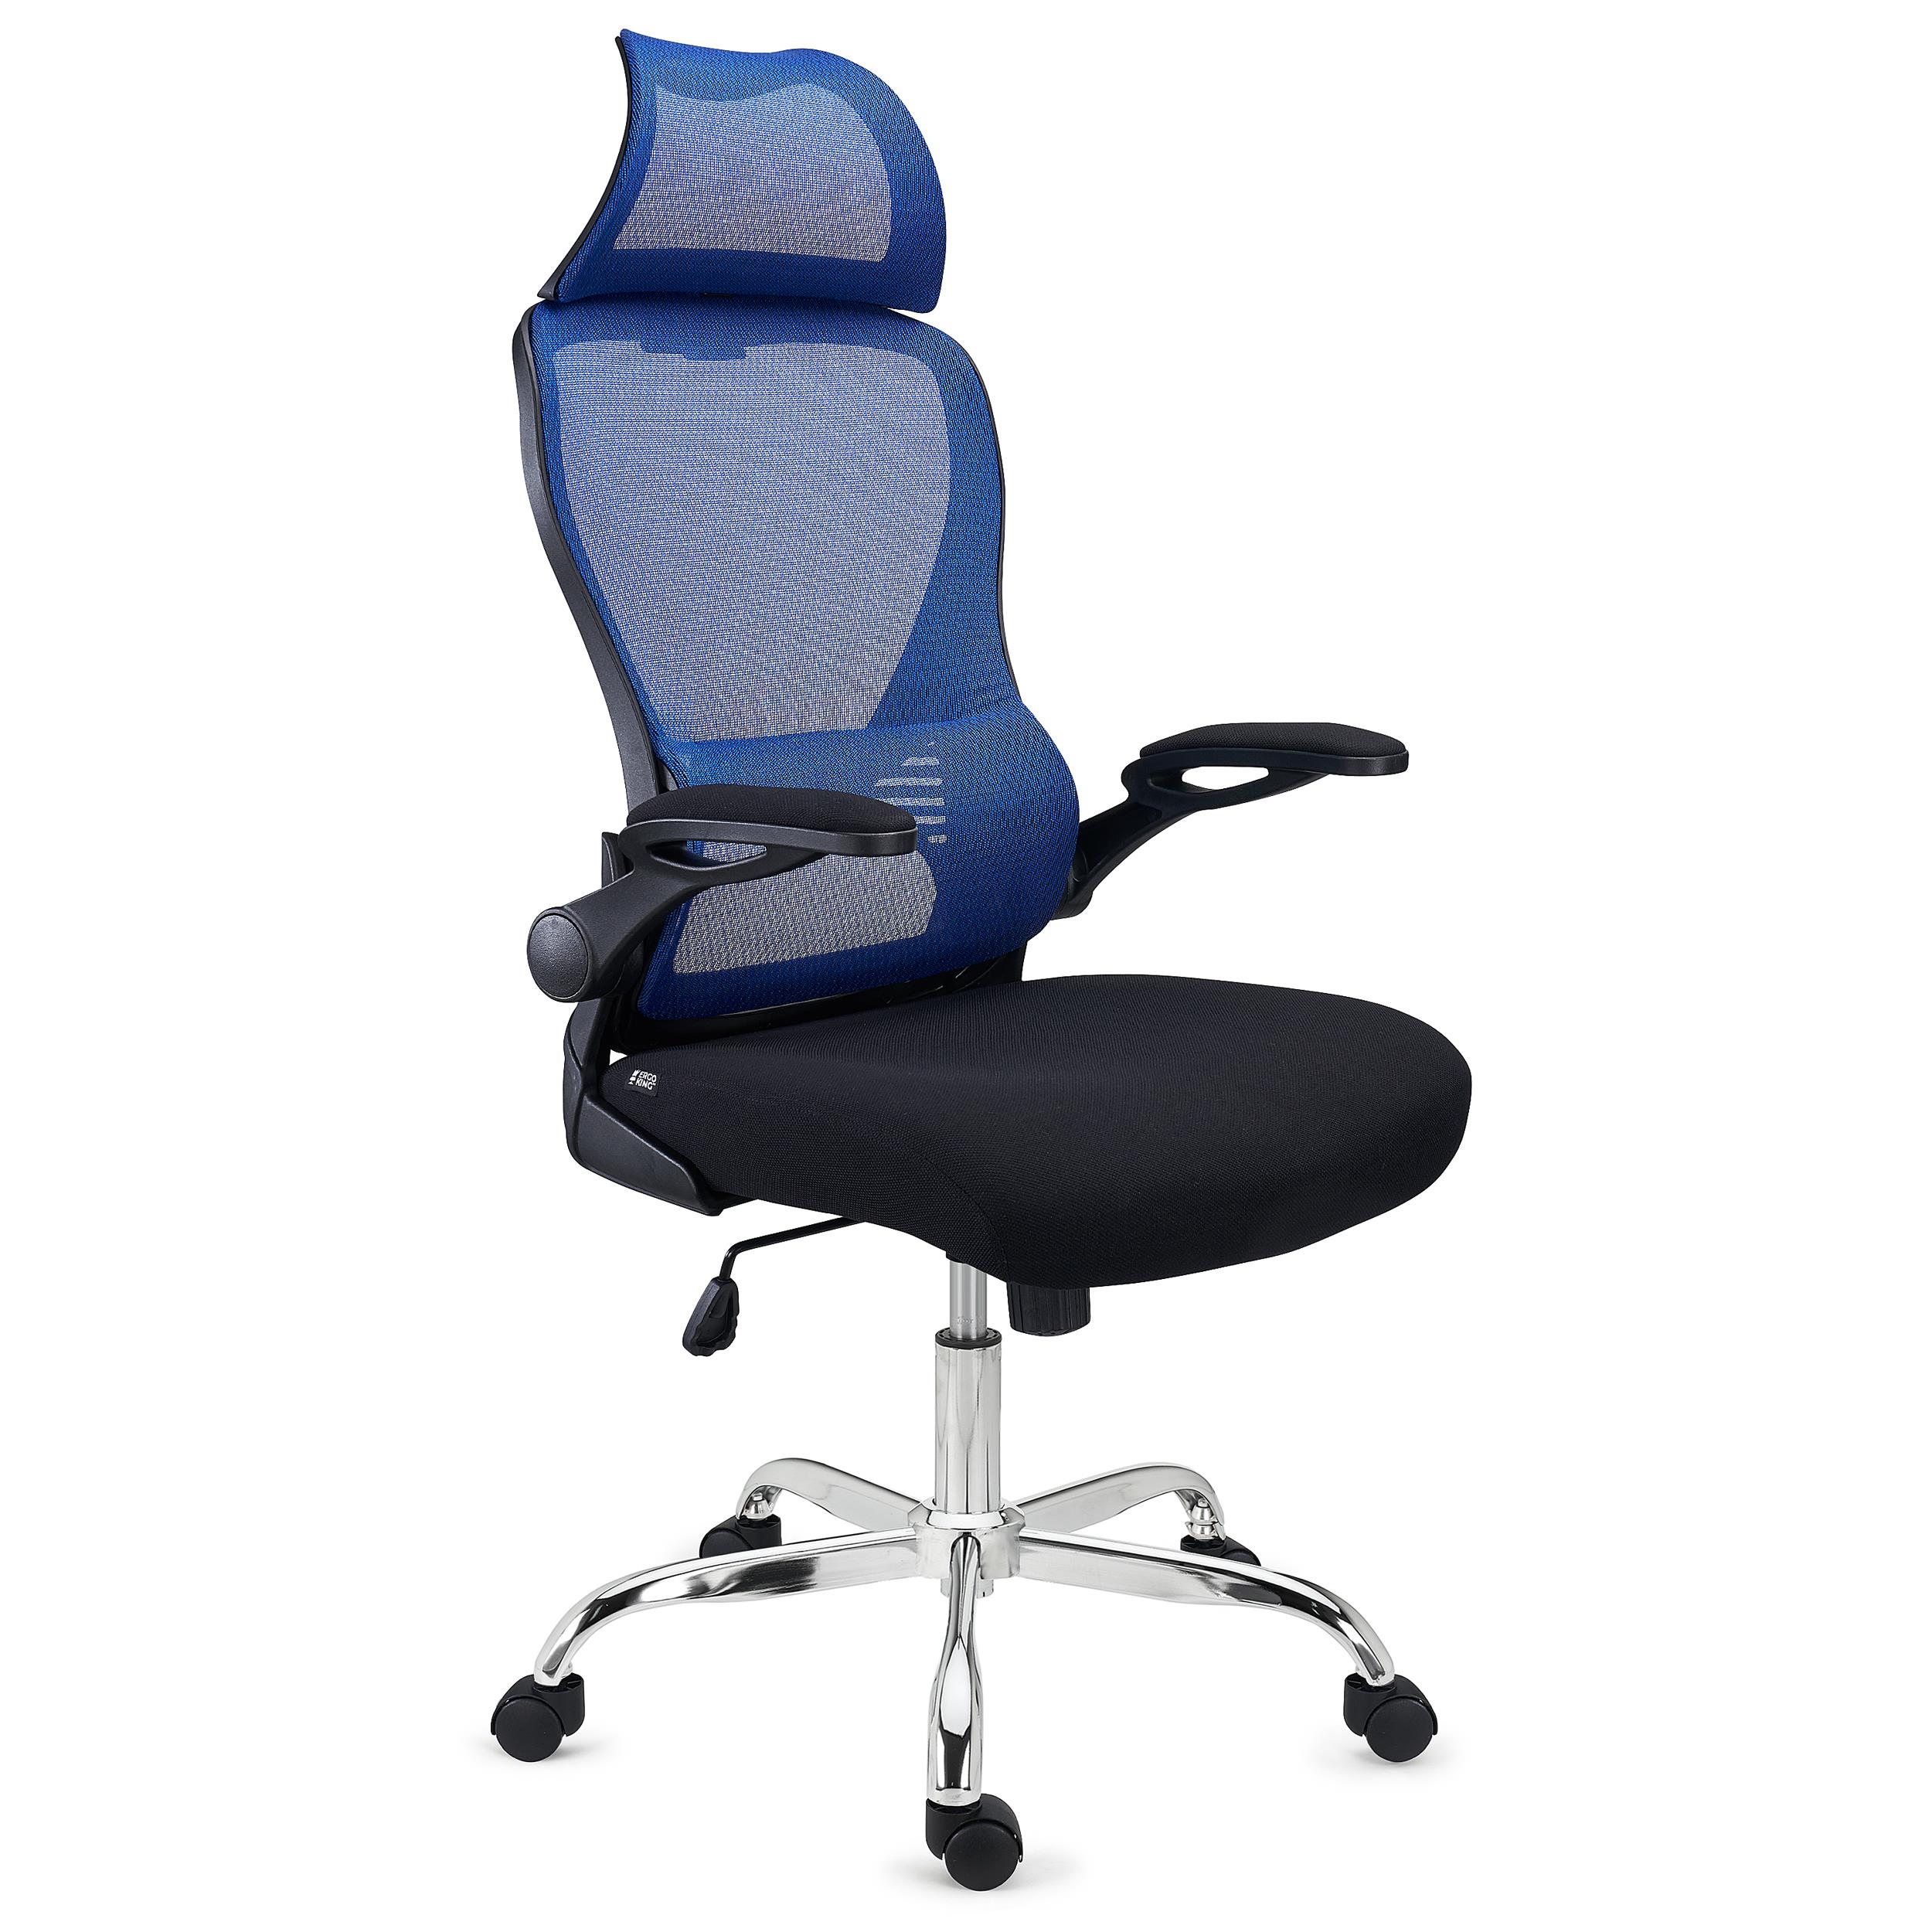 Chaise de Bureau CORFU, Appui-tête, Accoudoirs Rabattables, Design Ergonomique, Bleu